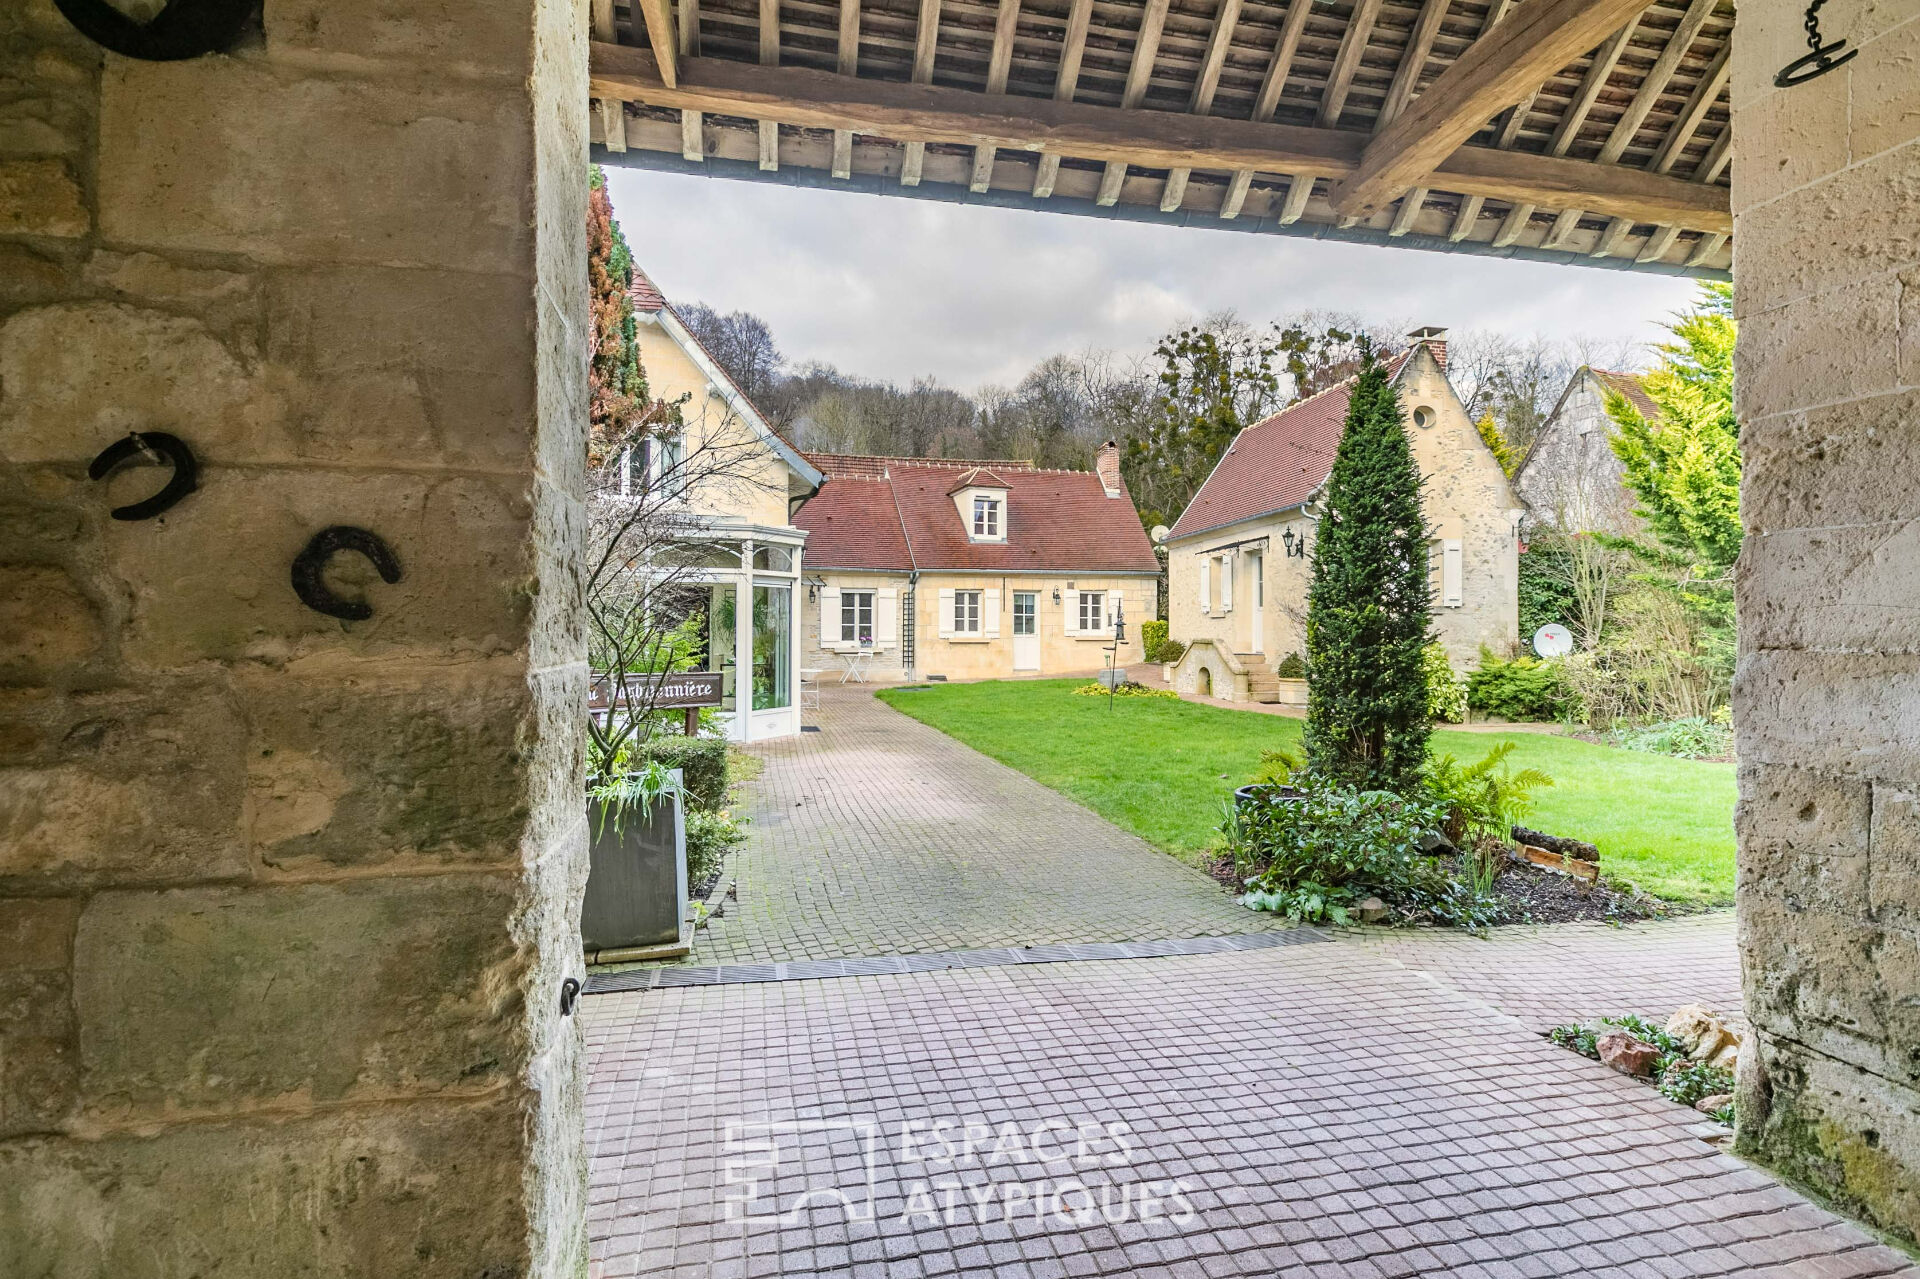 La Parfaite – Authentic stone farmhouse renovated with taste